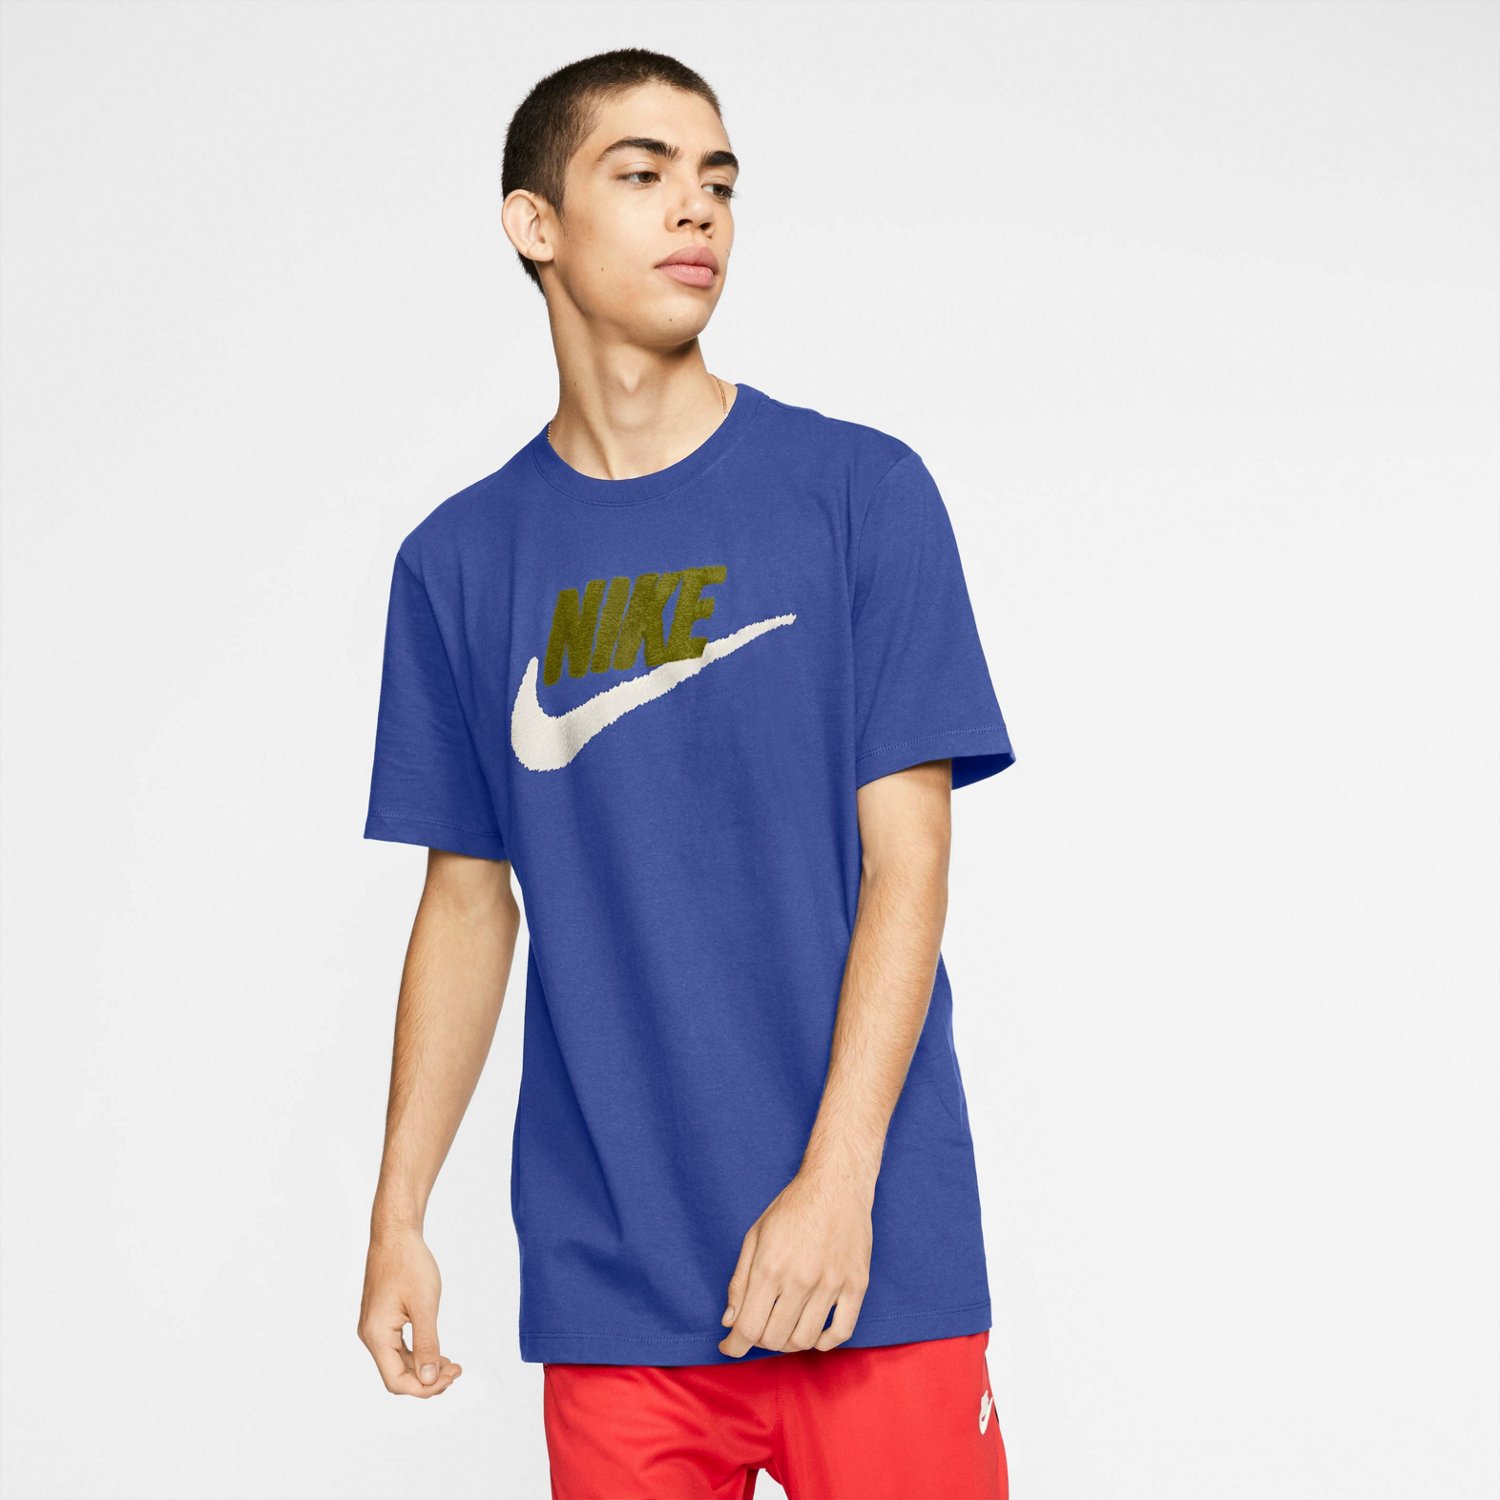 Nike Men's Brandmark T-Shirt Blue Dark 